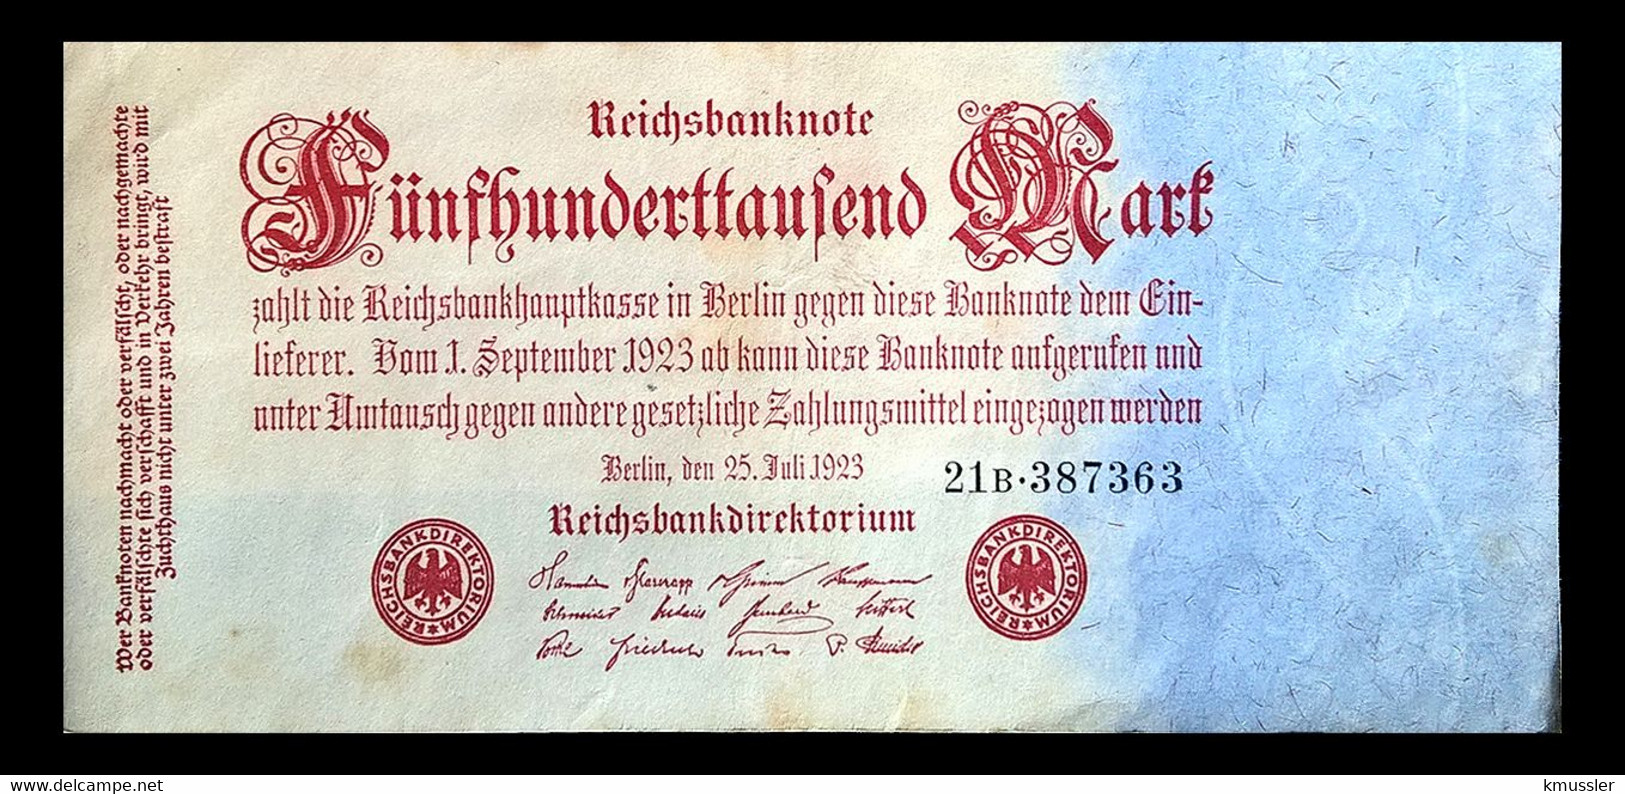 # # # Banknote Deutsches Reich (Germany) 500.000 Mark 1923 # # # - 500000 Mark